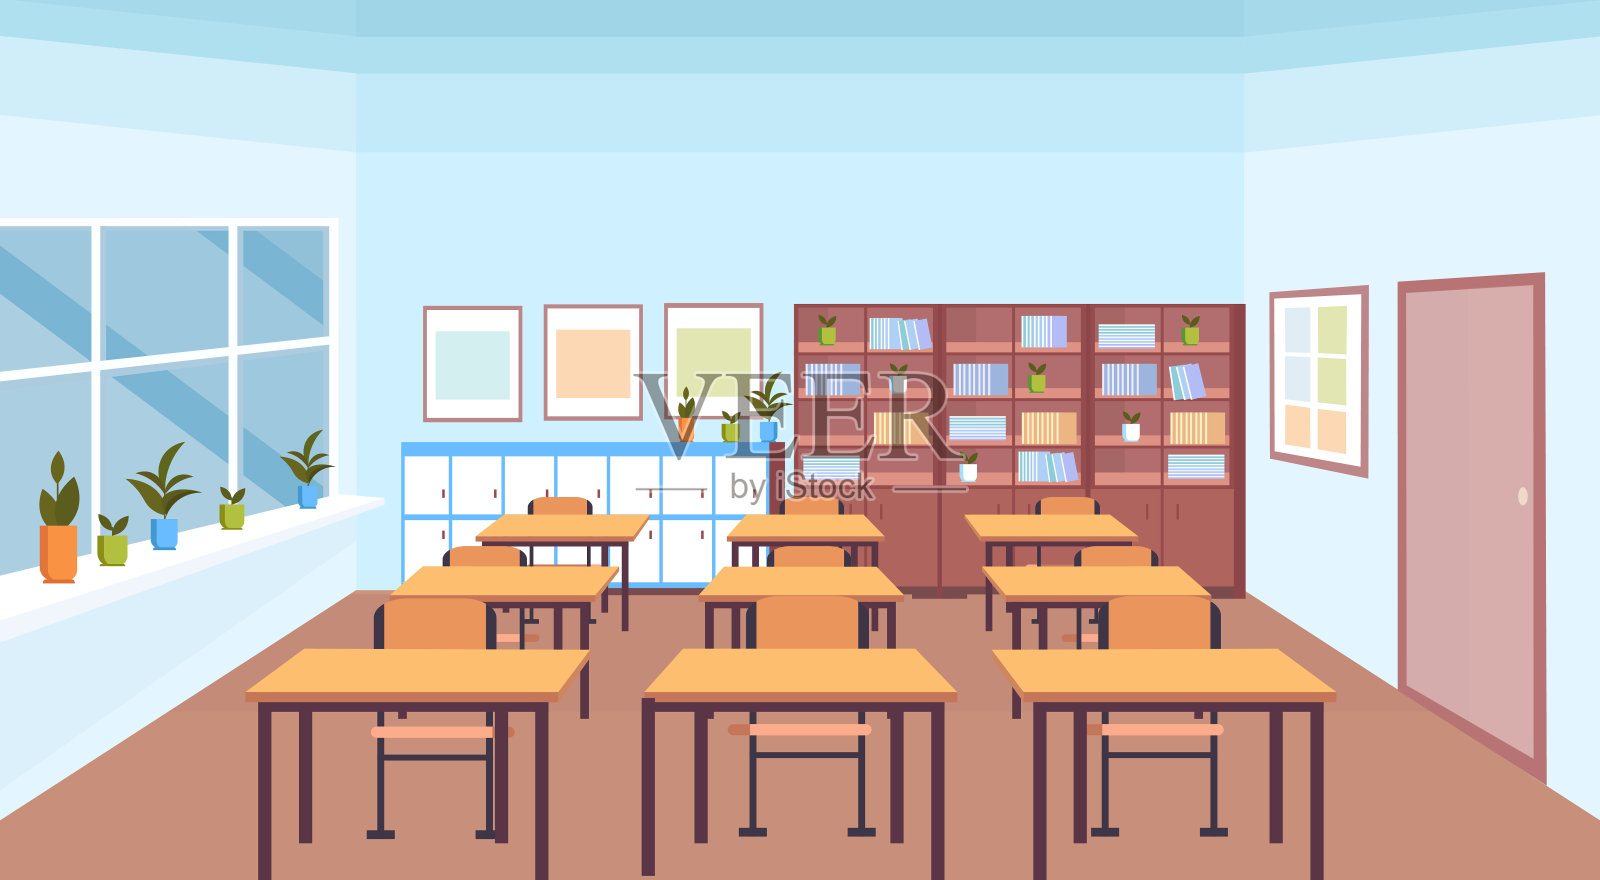 现代学校教室内部书架书架桌椅空无一人横横幅平插画图片素材